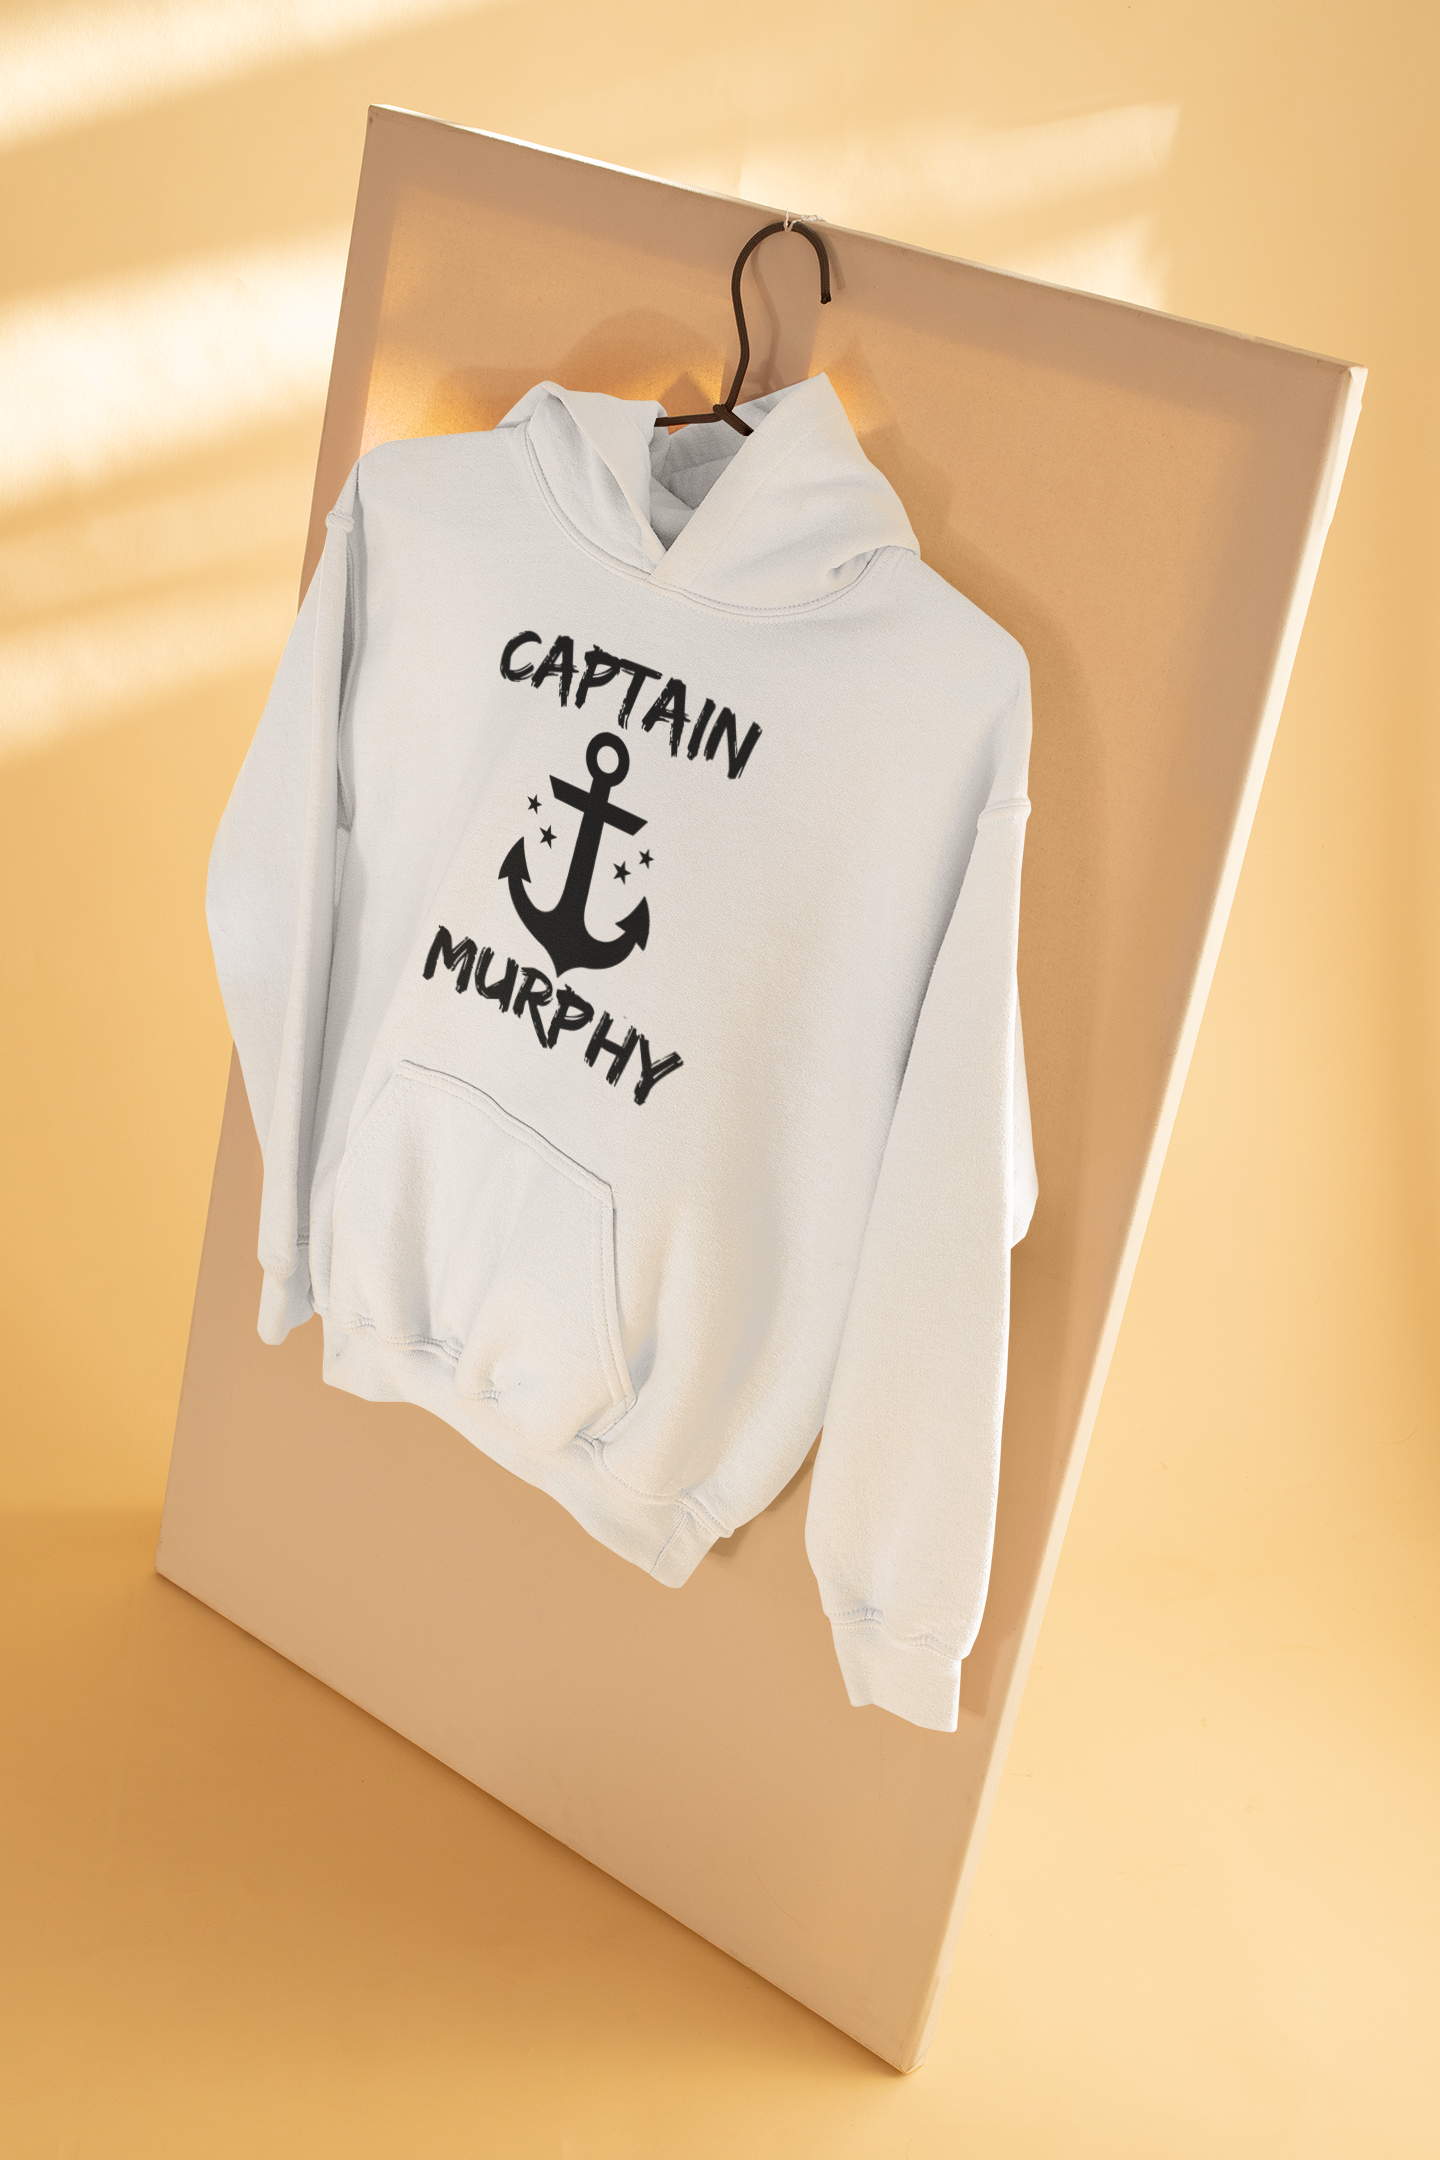 Captain Murphy Merchant Navy Men Hoodies-FunkyTeesClub